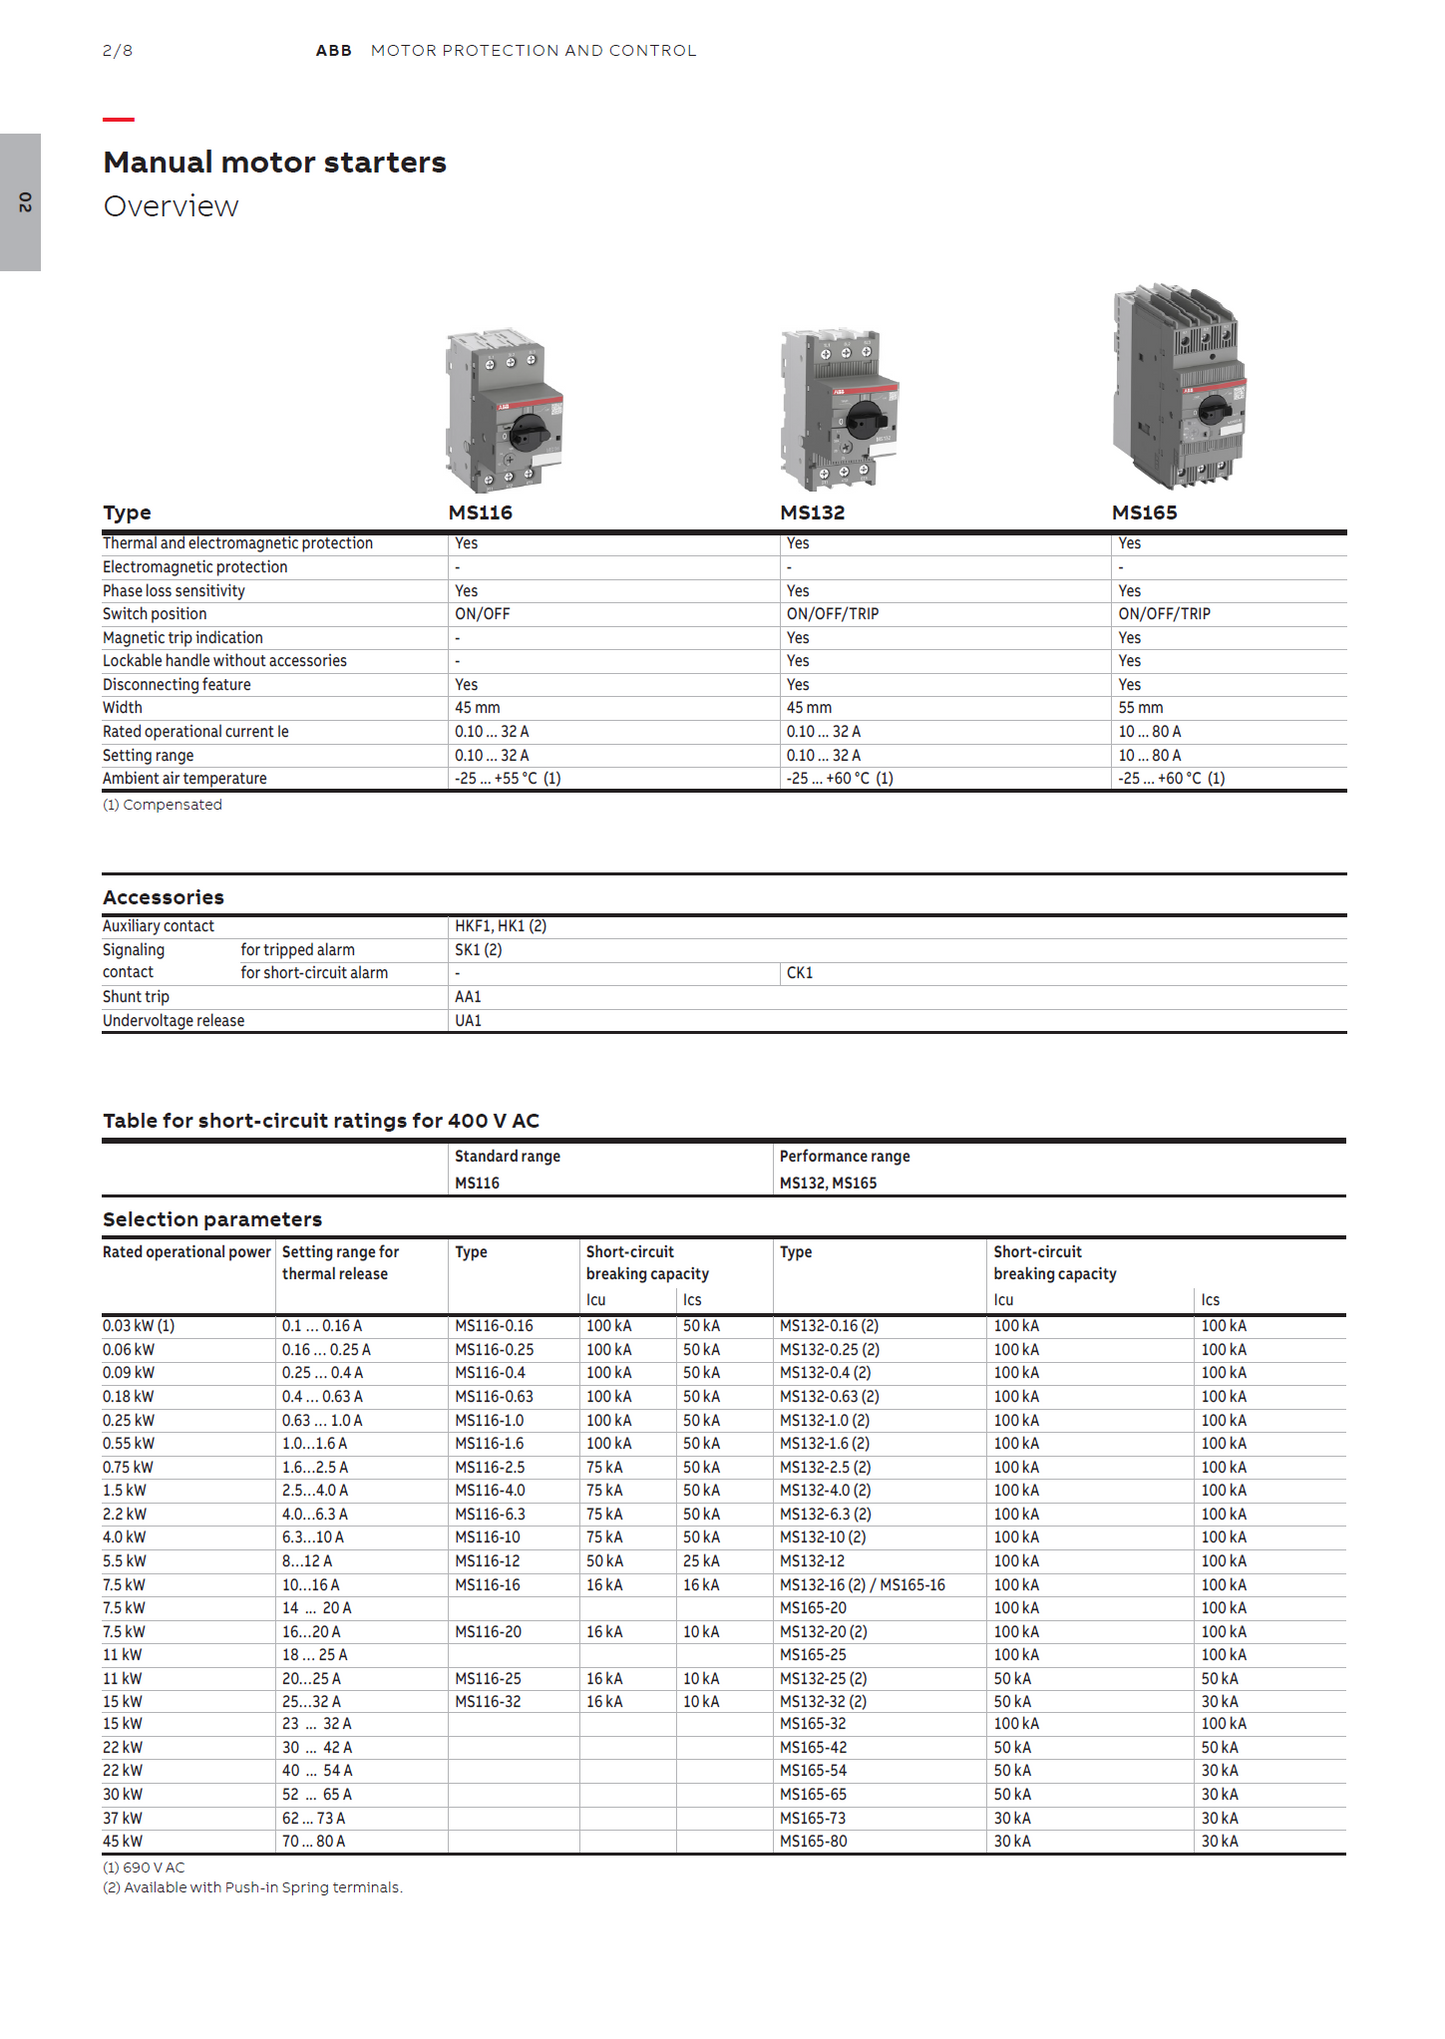 ABB Manual Motor Starter MS116-4.0 1SAM250000R1008